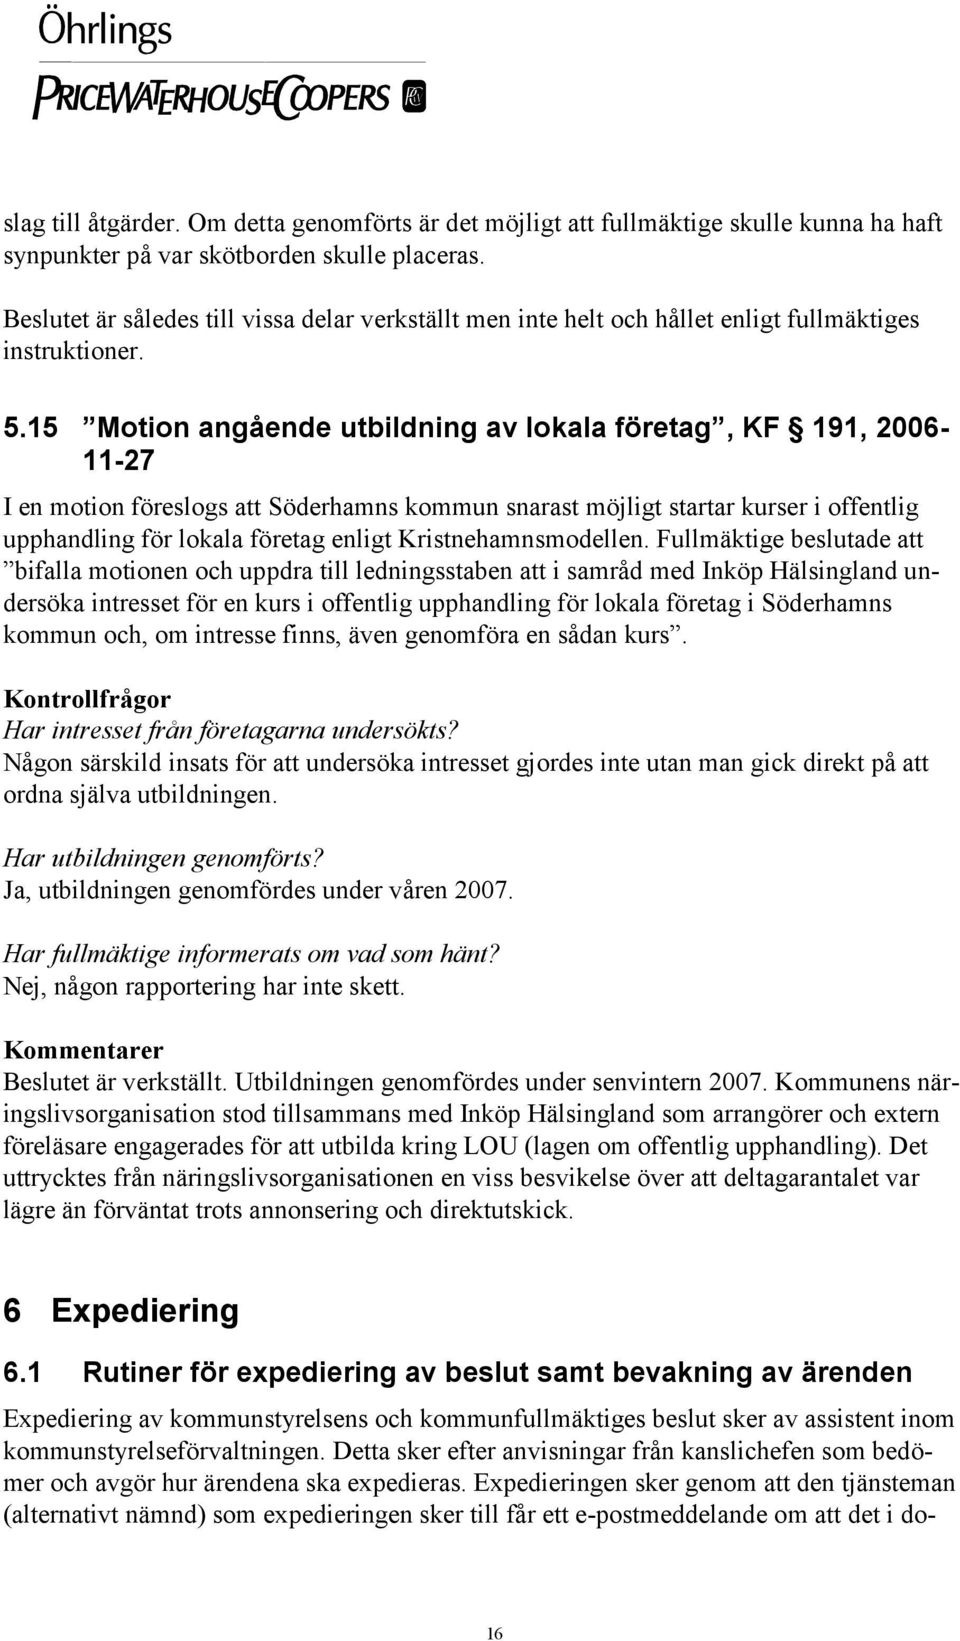 15 Motion angående utbildning av lokala företag, KF 191, 2006-11-27 I en motion föreslogs att Söderhamns kommun snarast möjligt startar kurser i offentlig upphandling för lokala företag enligt